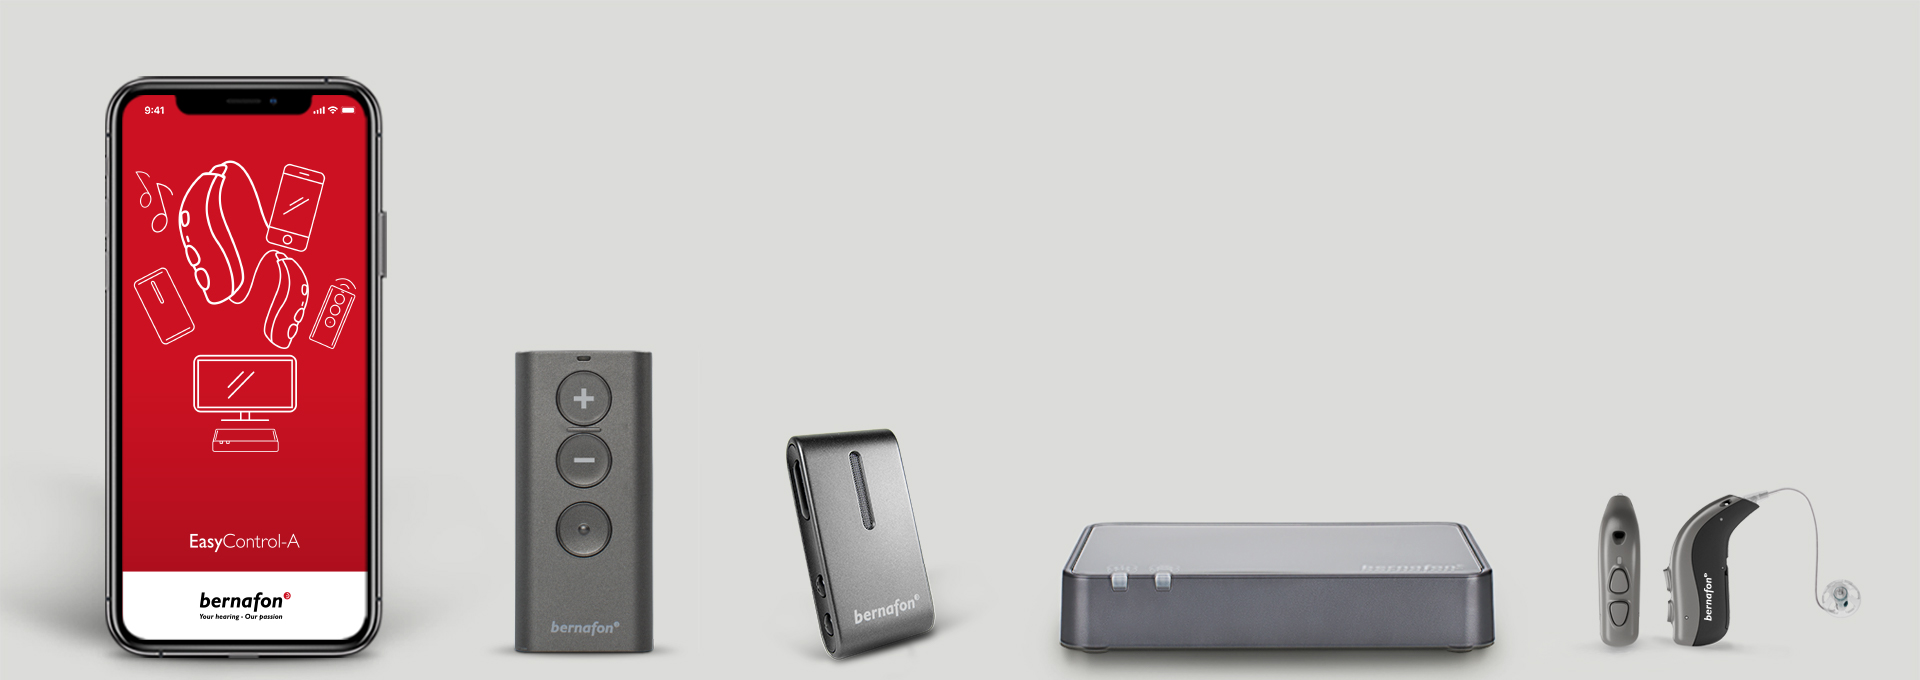 Bernafon aksesuarları yan yana: Bernafon akıllı telefon uygulaması, TV adaptörü, uzaktan kumanda, işitme cihazları ve Soundclip-A